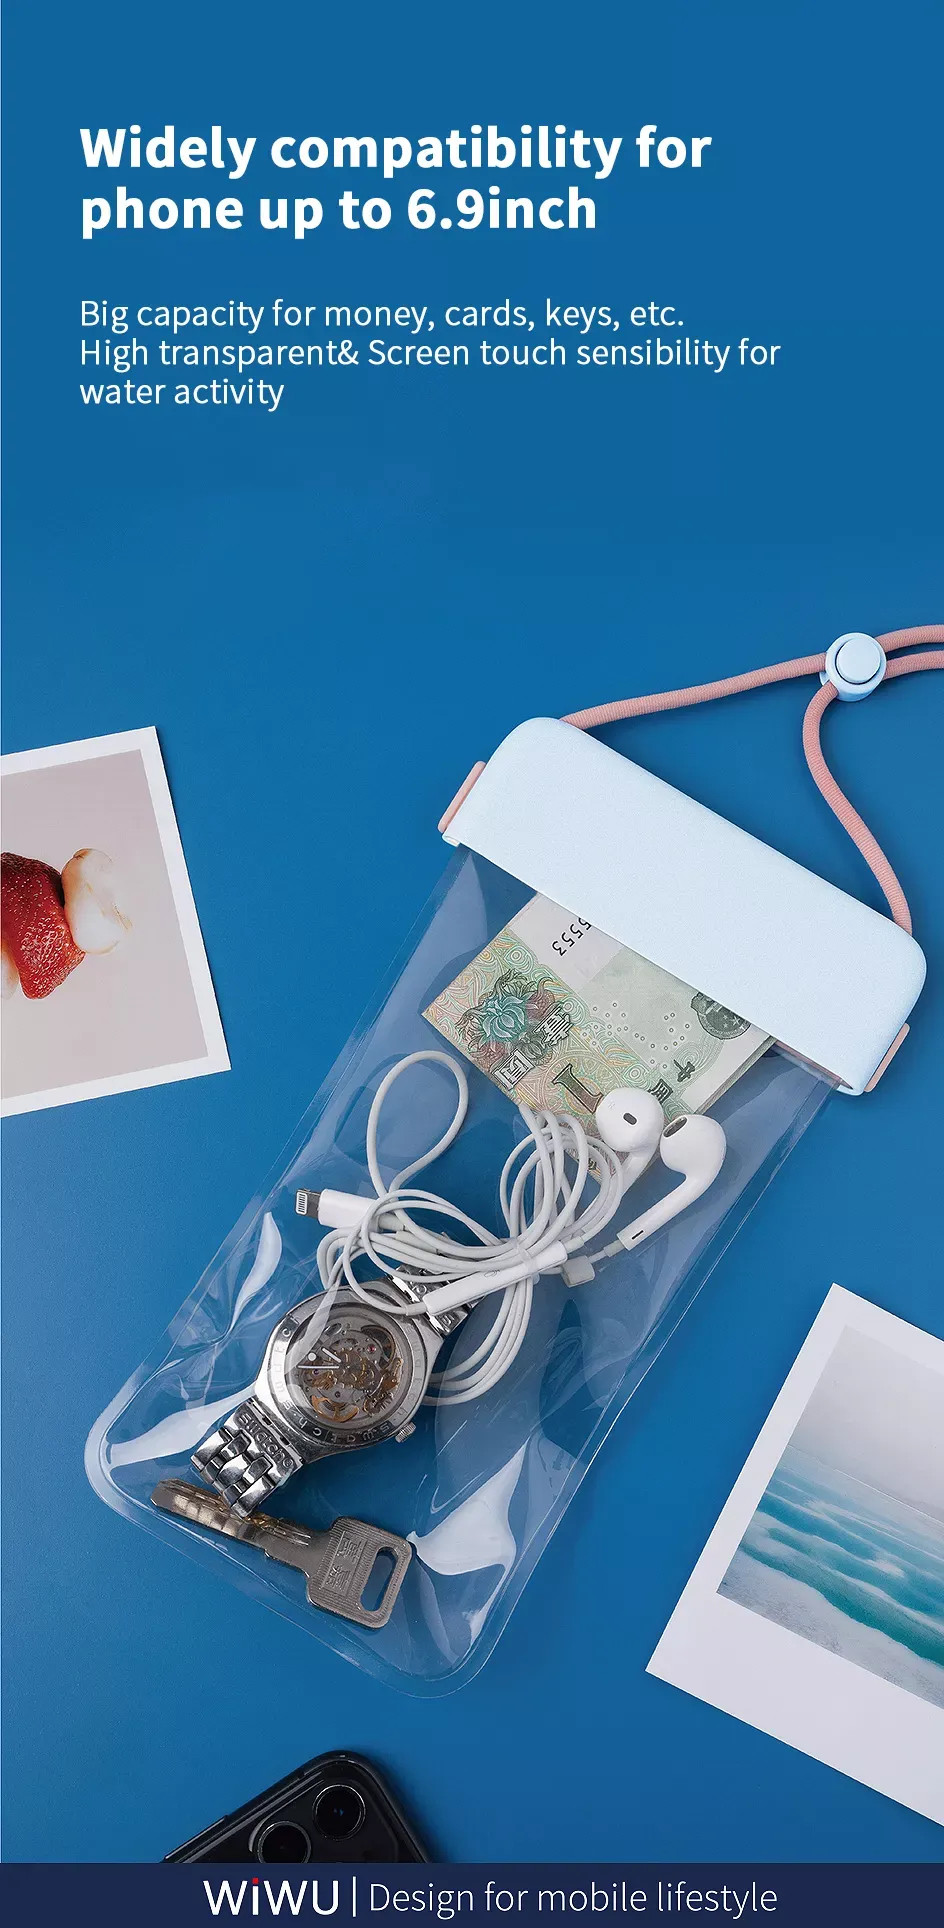 Túi chống nước waterproof cao cấp cho điện thoại 6.9 inch trở xuống chuẩn chống nước IPx8 hiệu WIWU Aqua